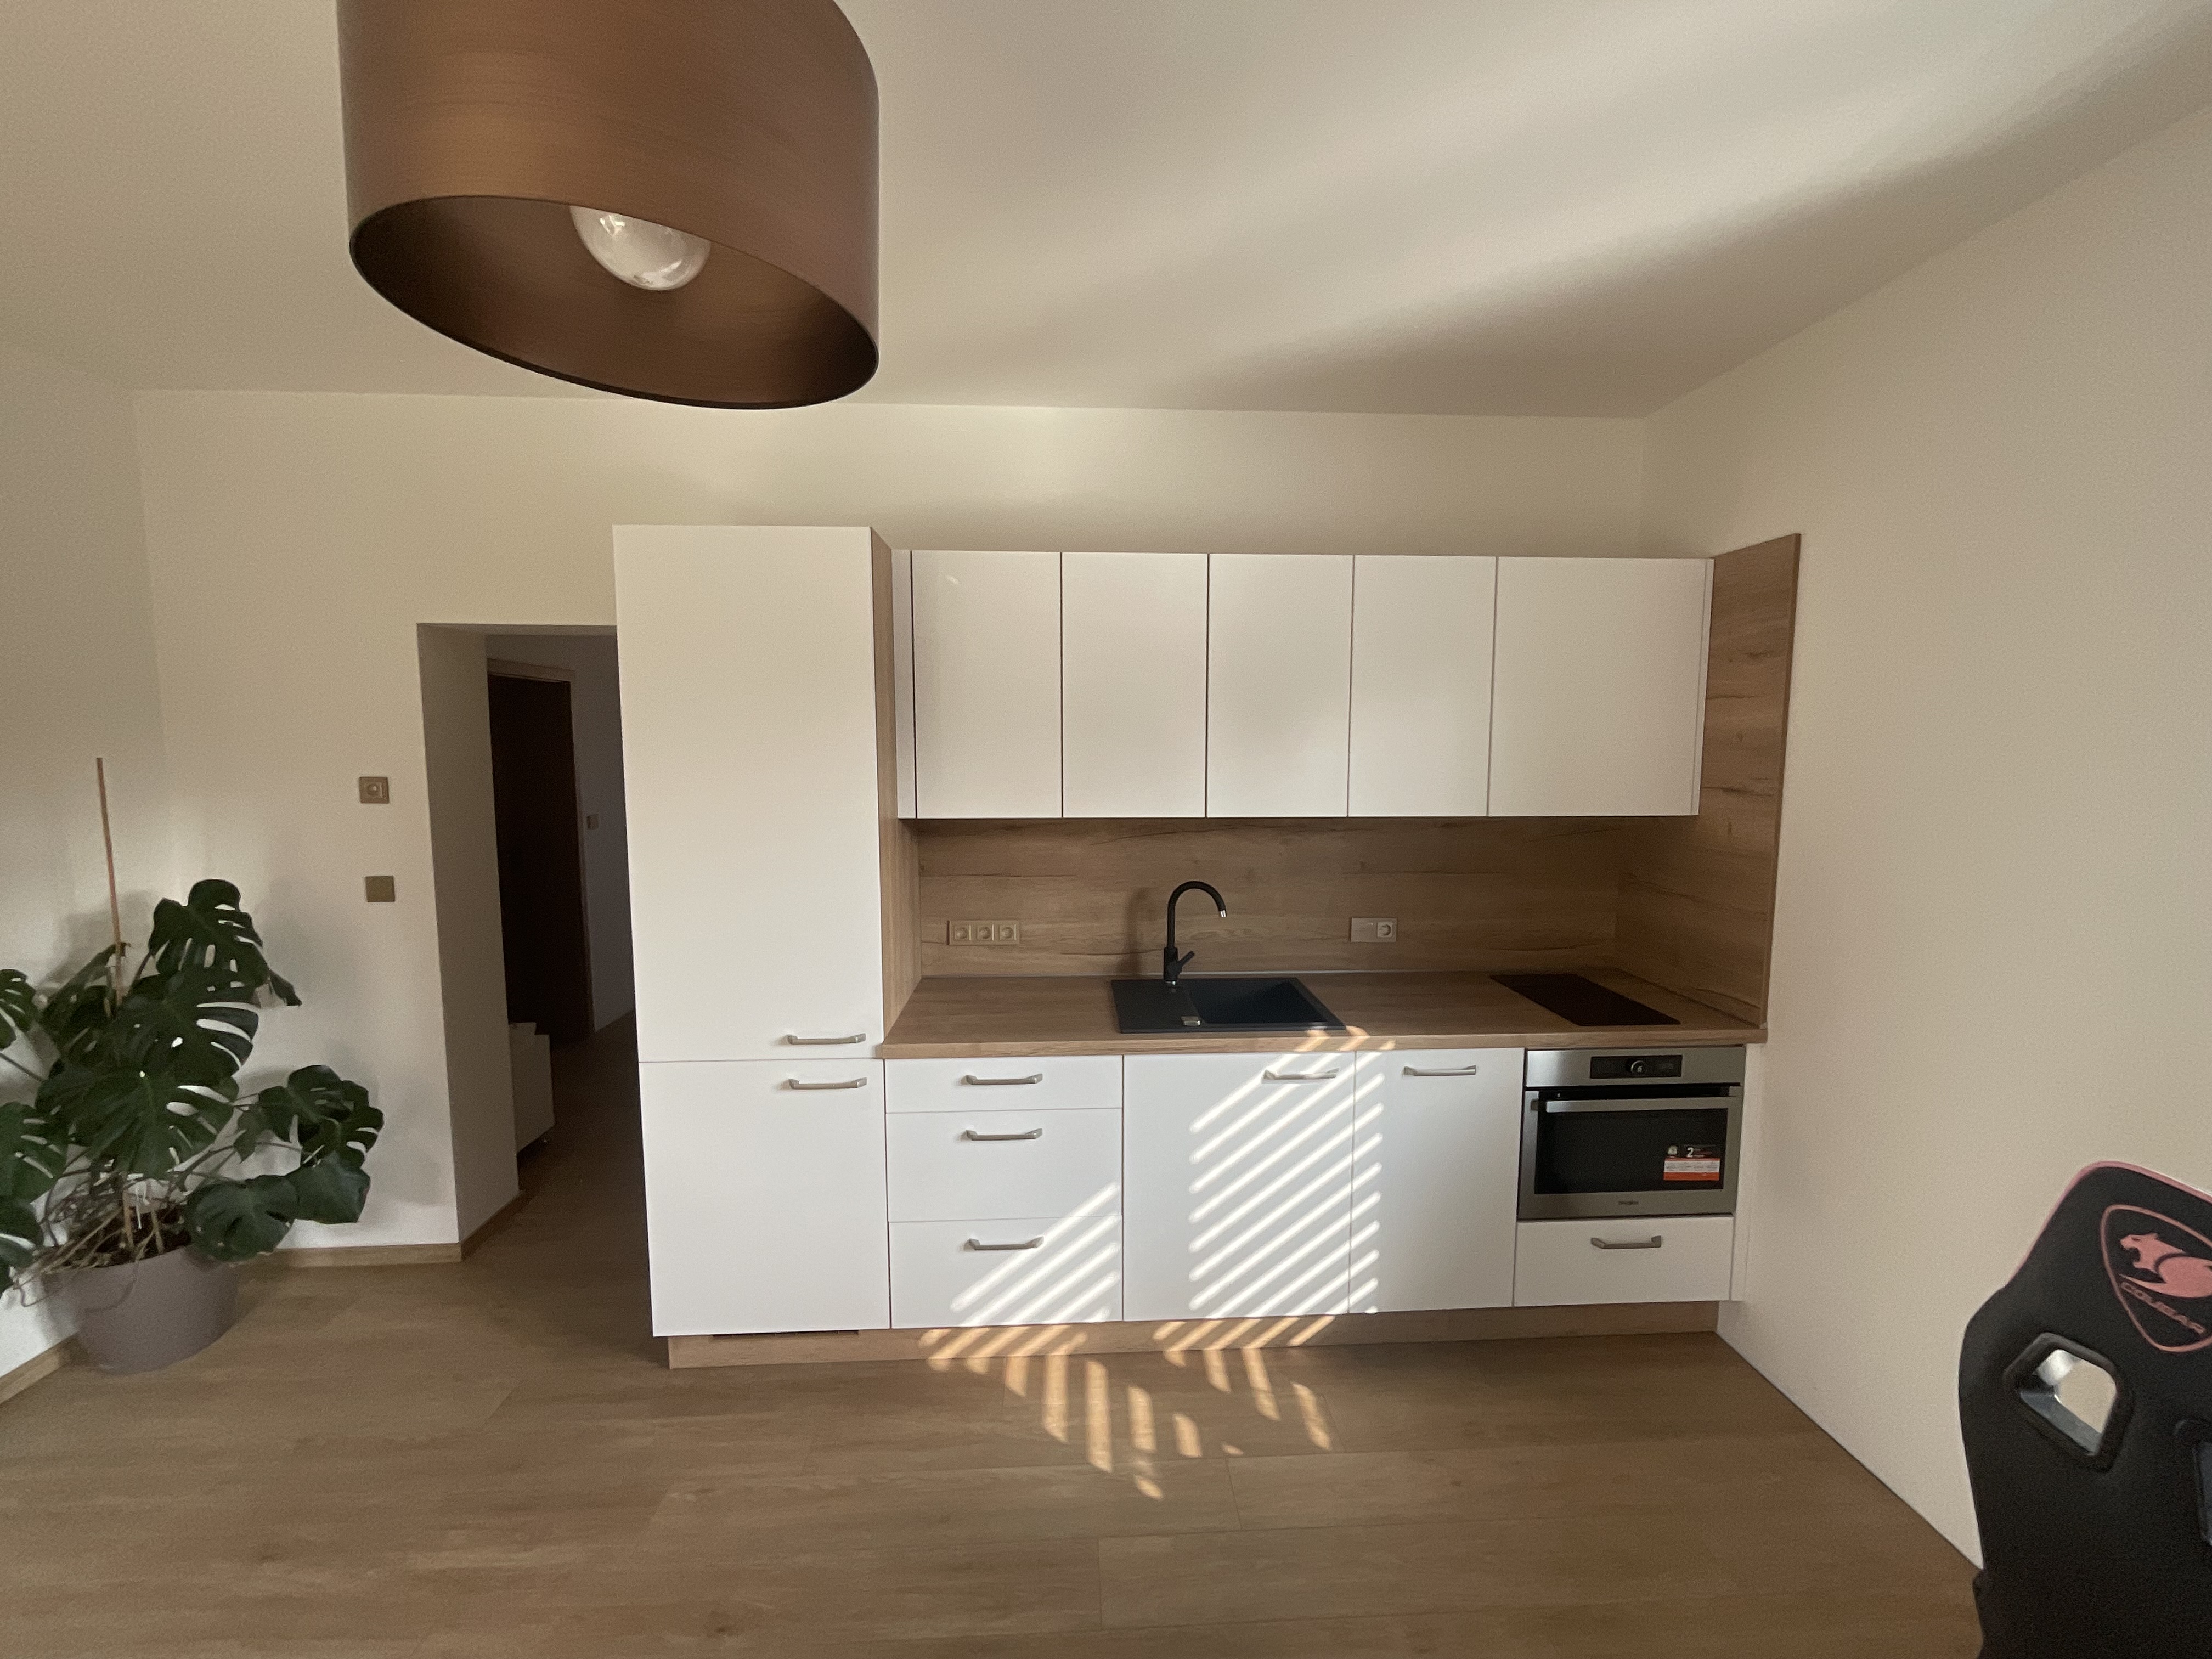 Moderní bílá kuchyně do nájemního bytu v Praze